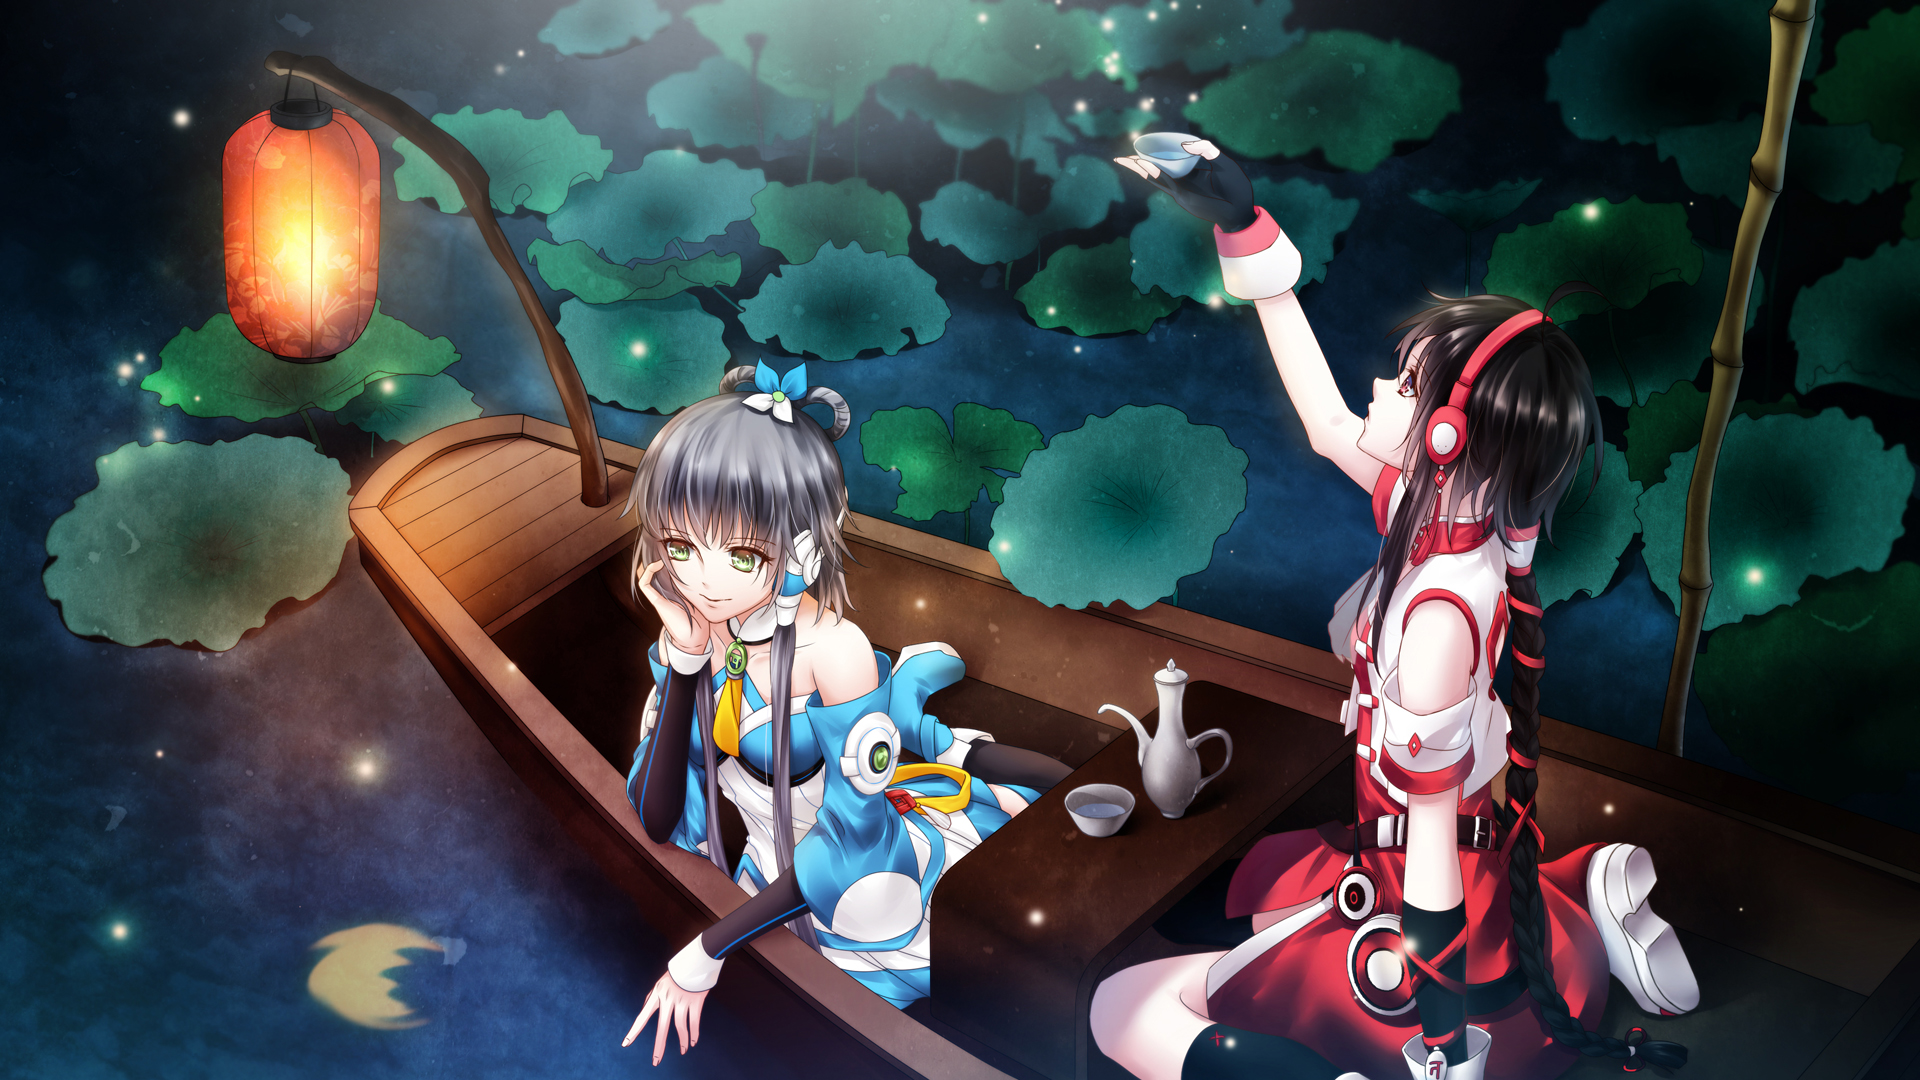 Wallpaper Luo tianyi, anime girls, yuezheng ling, lake, boat, night, outdoor